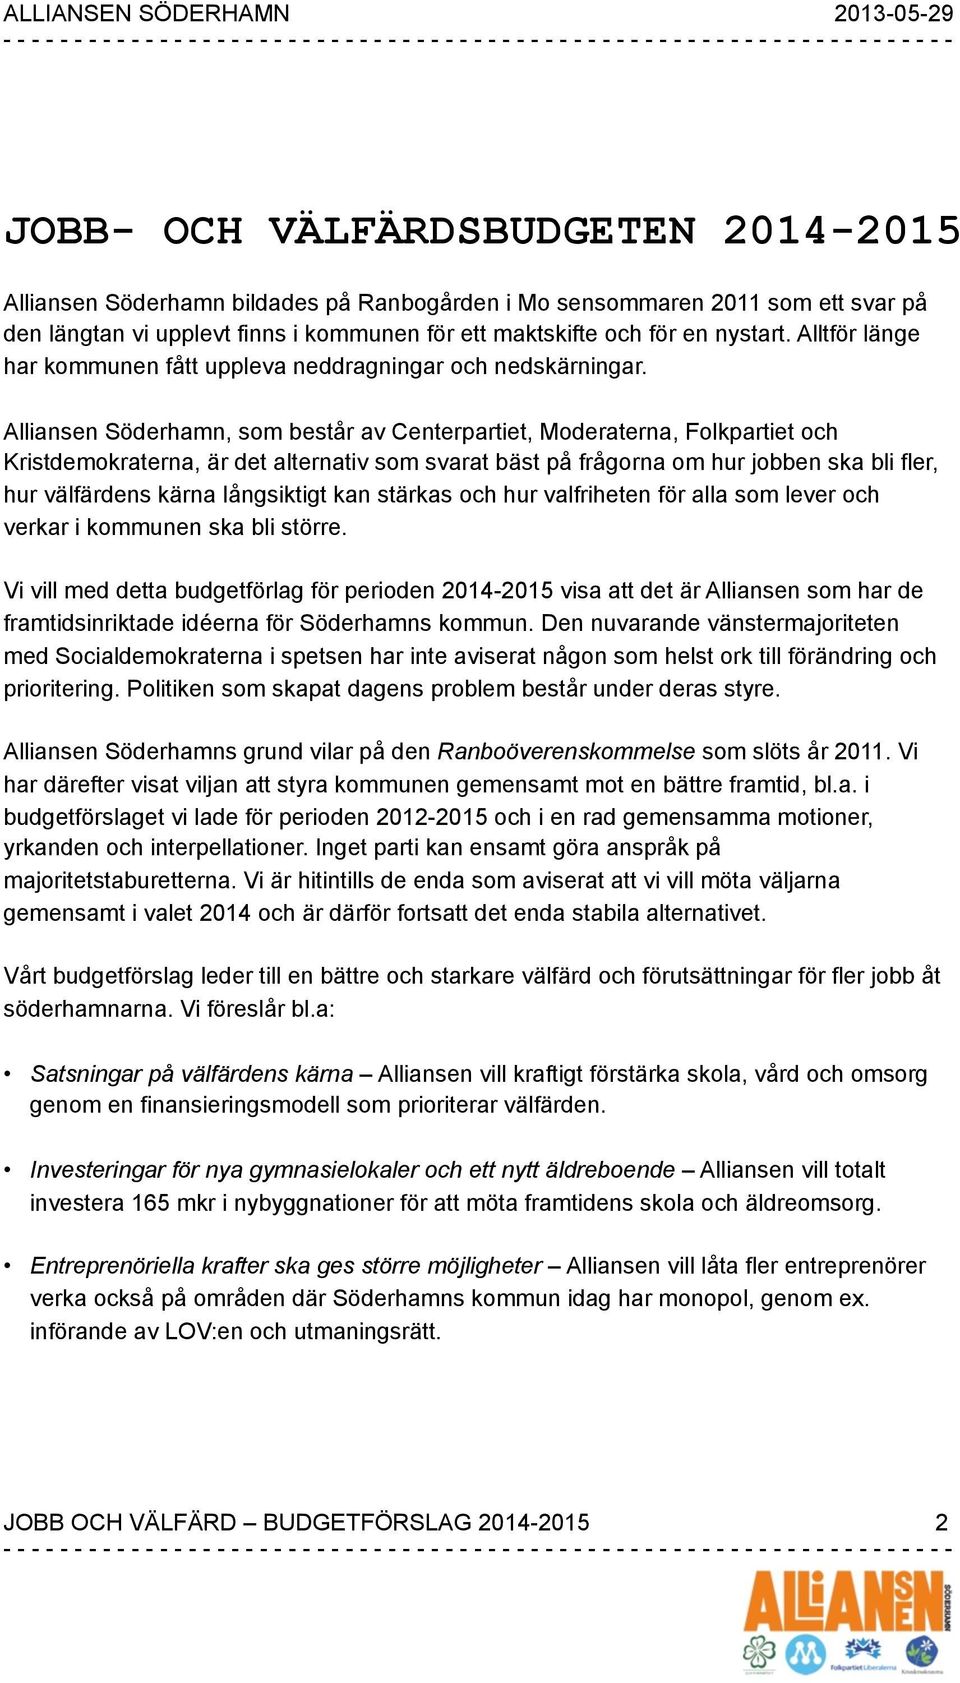 Alliansen Söderhamn, som består av Centerpartiet, Moderaterna, Folkpartiet och Kristdemokraterna, är det alternativ som svarat bäst på frågorna om hur jobben ska bli fler, hur välfärdens kärna